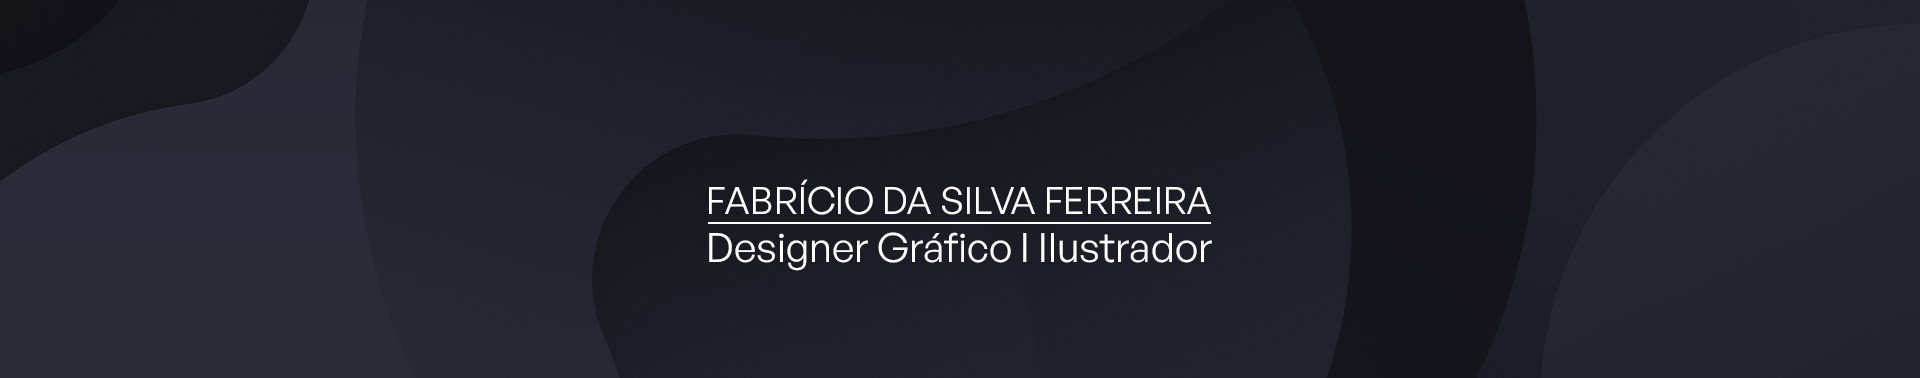 Fabrício da Silva Ferreira's profile banner